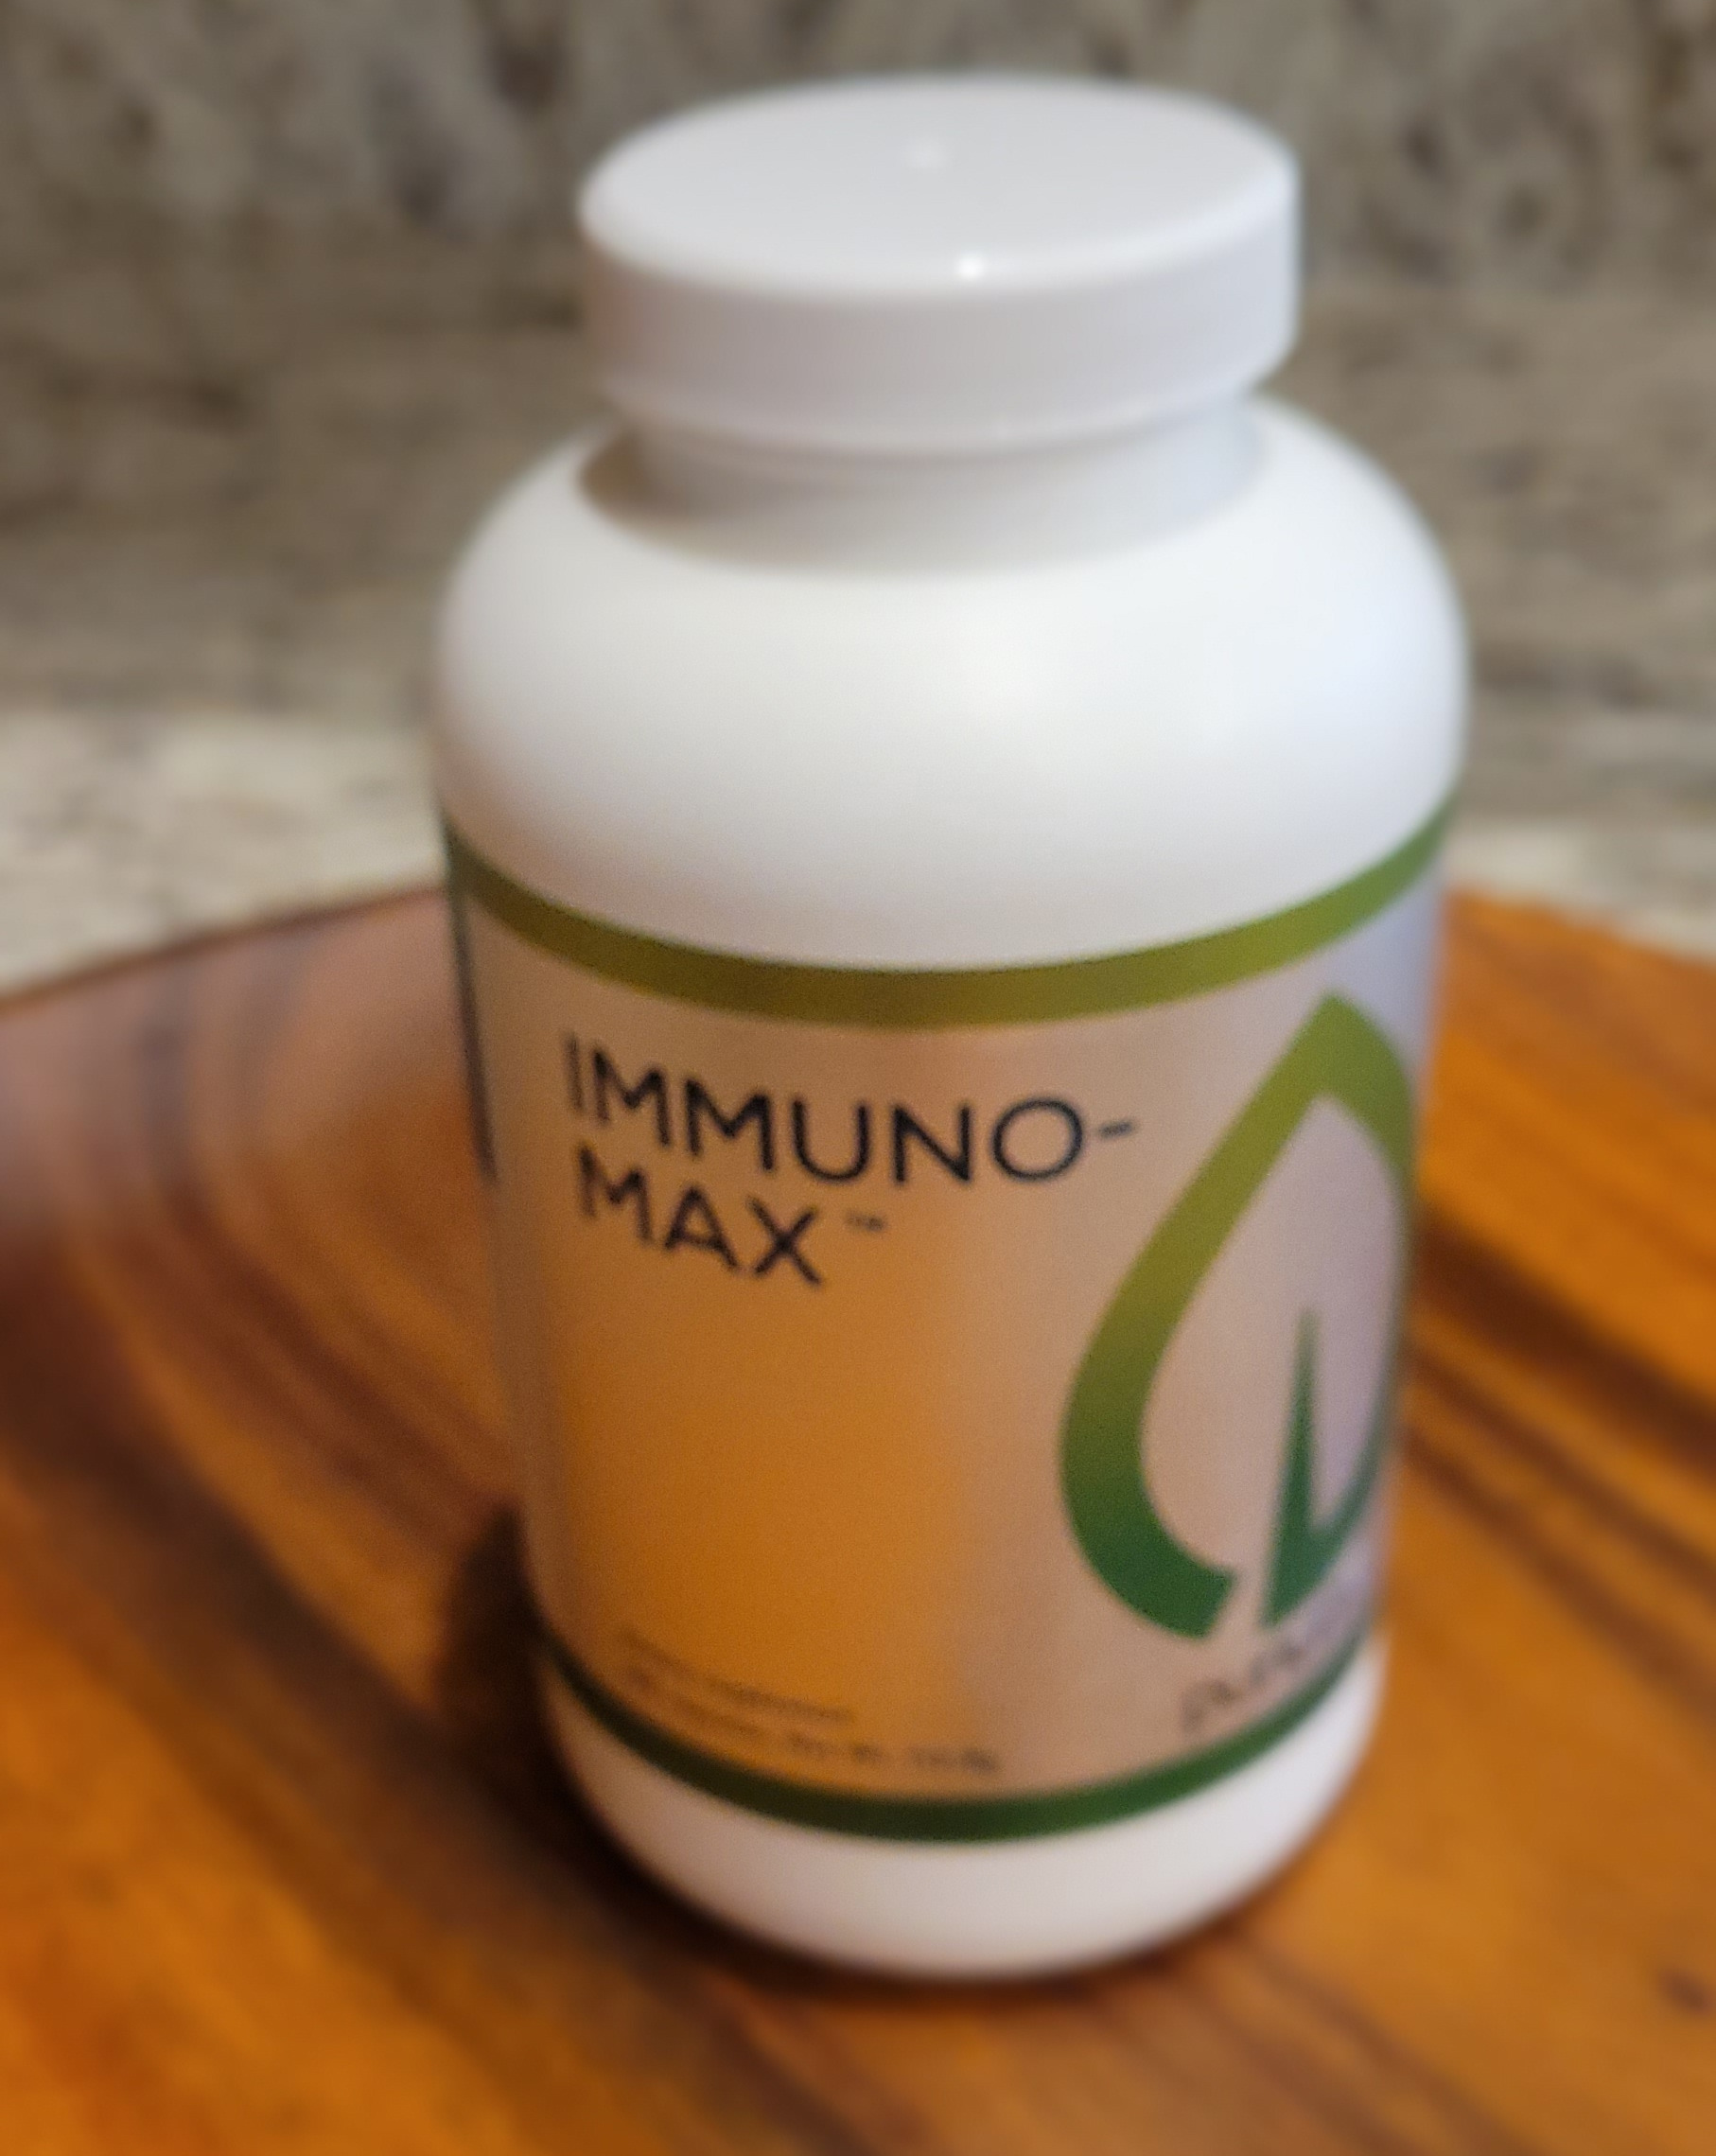 Immuno-Max